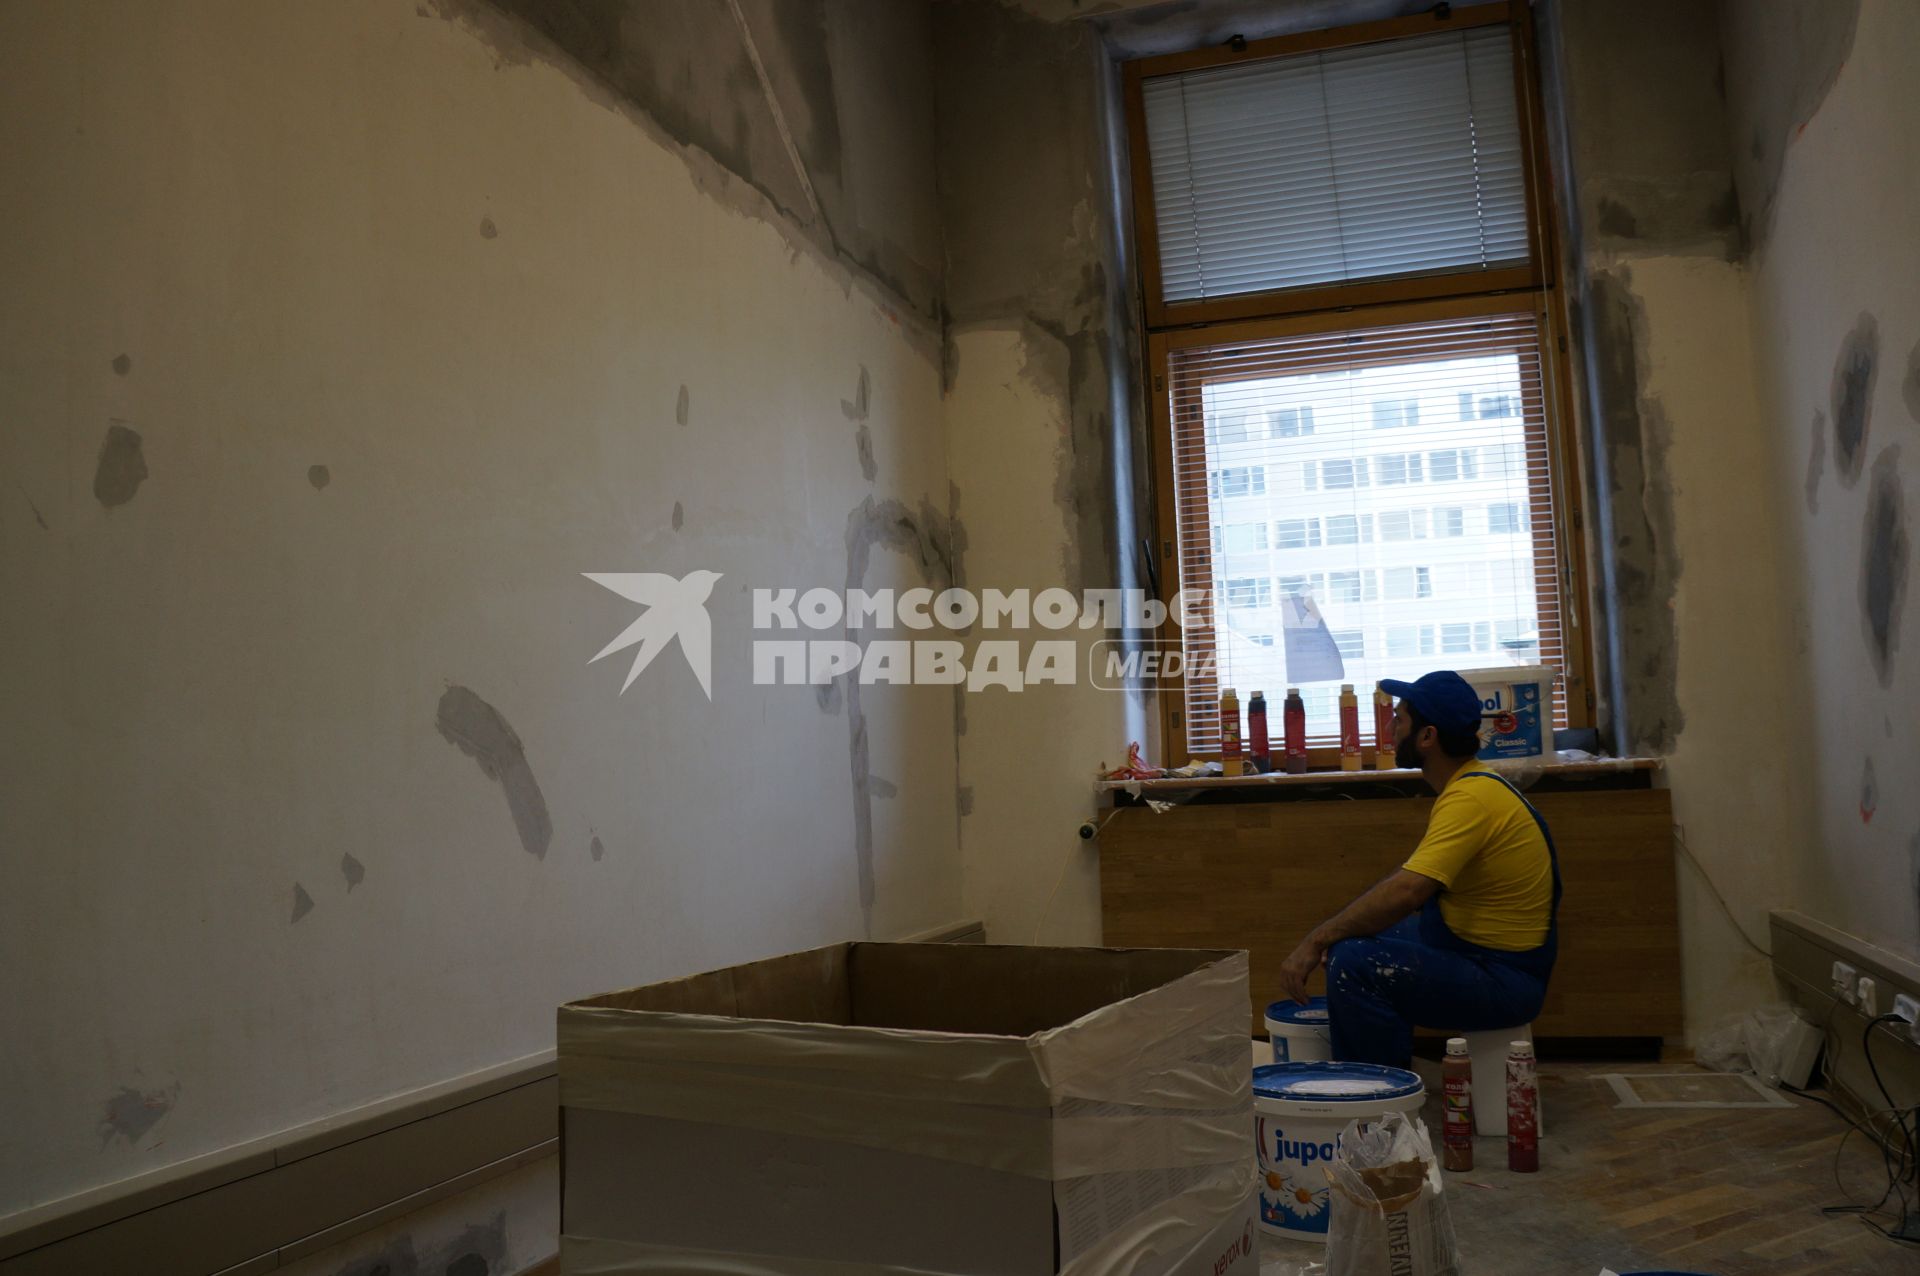 Ремонт здания Госдумы РФ. На снимке: строительный рабочий в одном из кабинетов Госдумы.